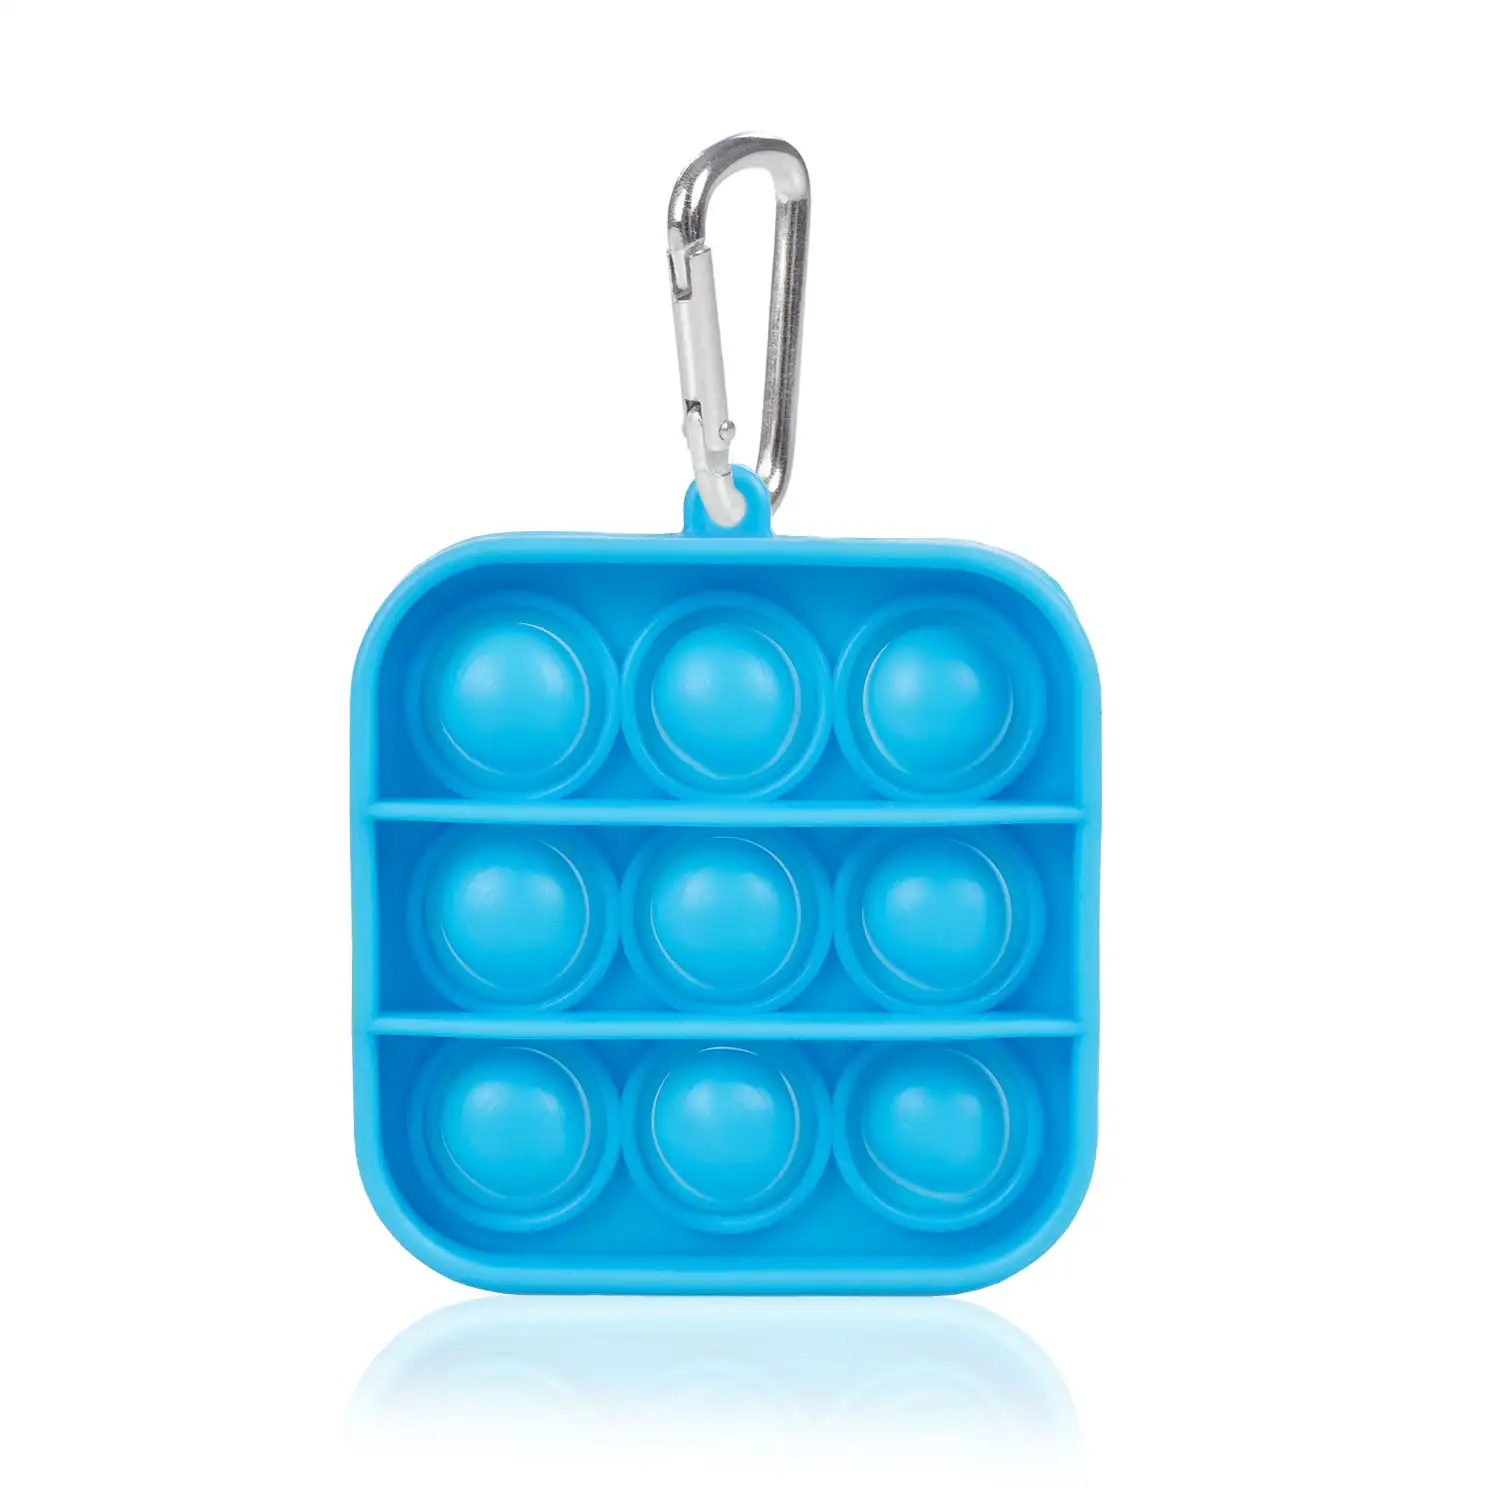 Mini Bubble Pop It juguete sensitivo desestresante, burbujas de silicona para apretar y pulsar. Diseño cuadrado con llavero.